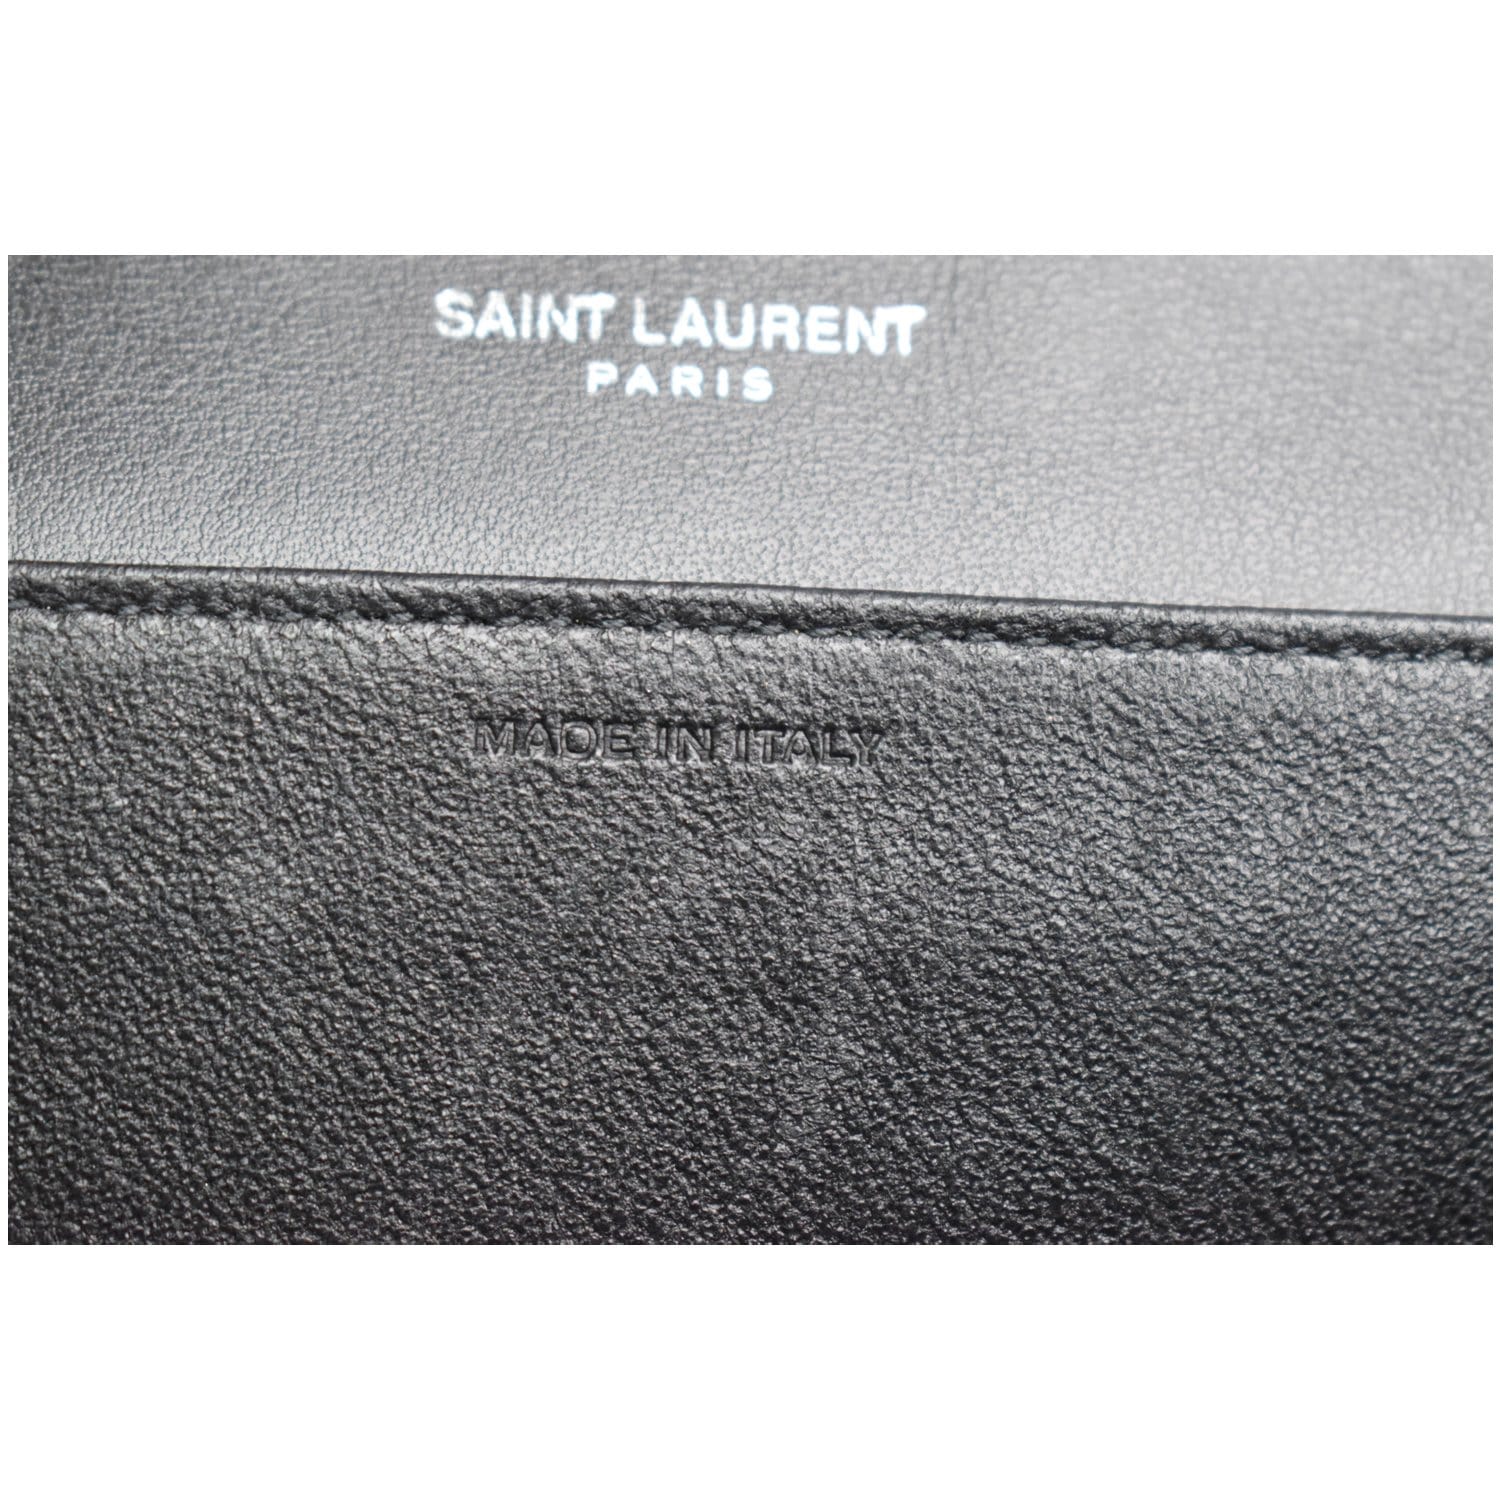 Saint Laurent Grey Leather Uptown Clutch Saint Laurent Paris